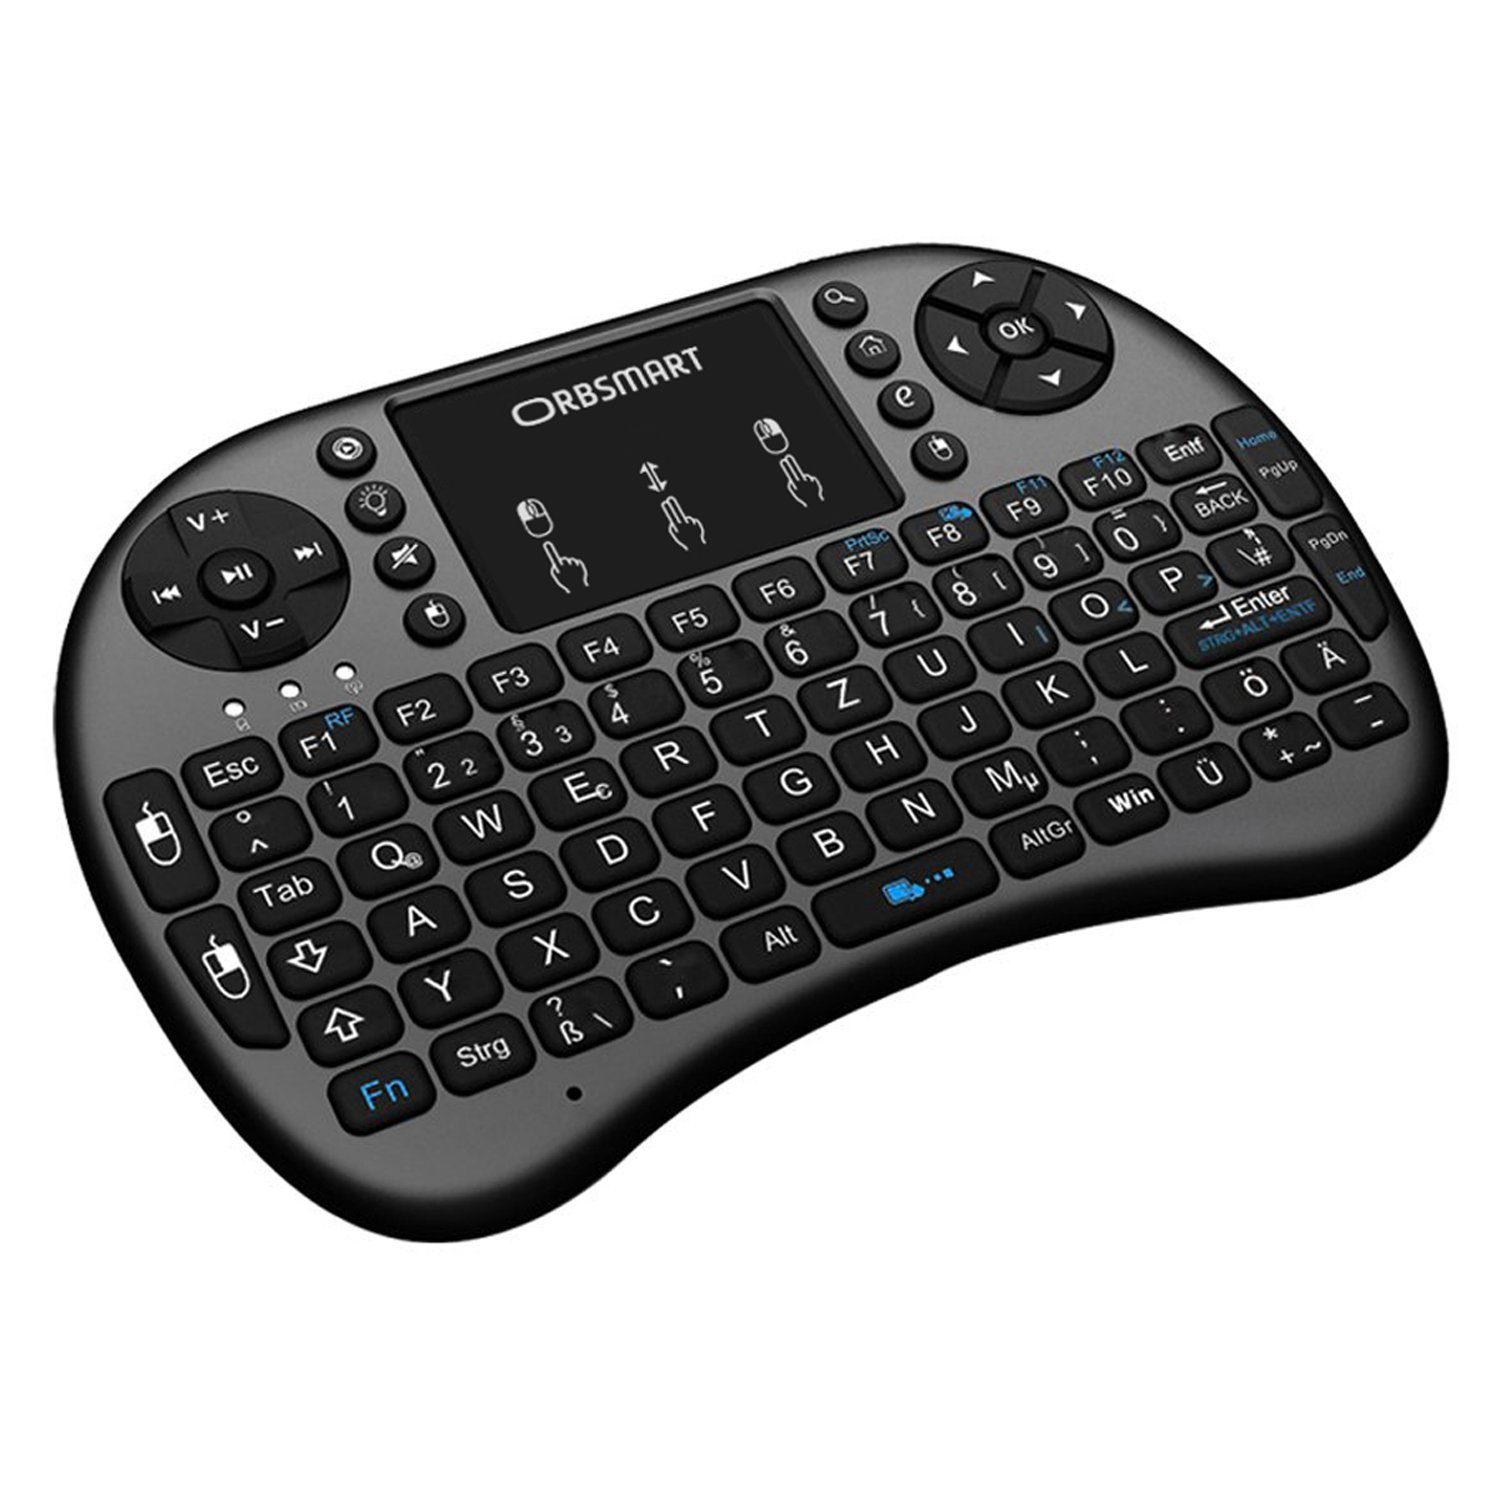 Orbsmart AM-2 Wireless-Tastatur (kabellos, mit integrierten Touchpad und LED-Beleuchtung) | Mechanische Tastaturen